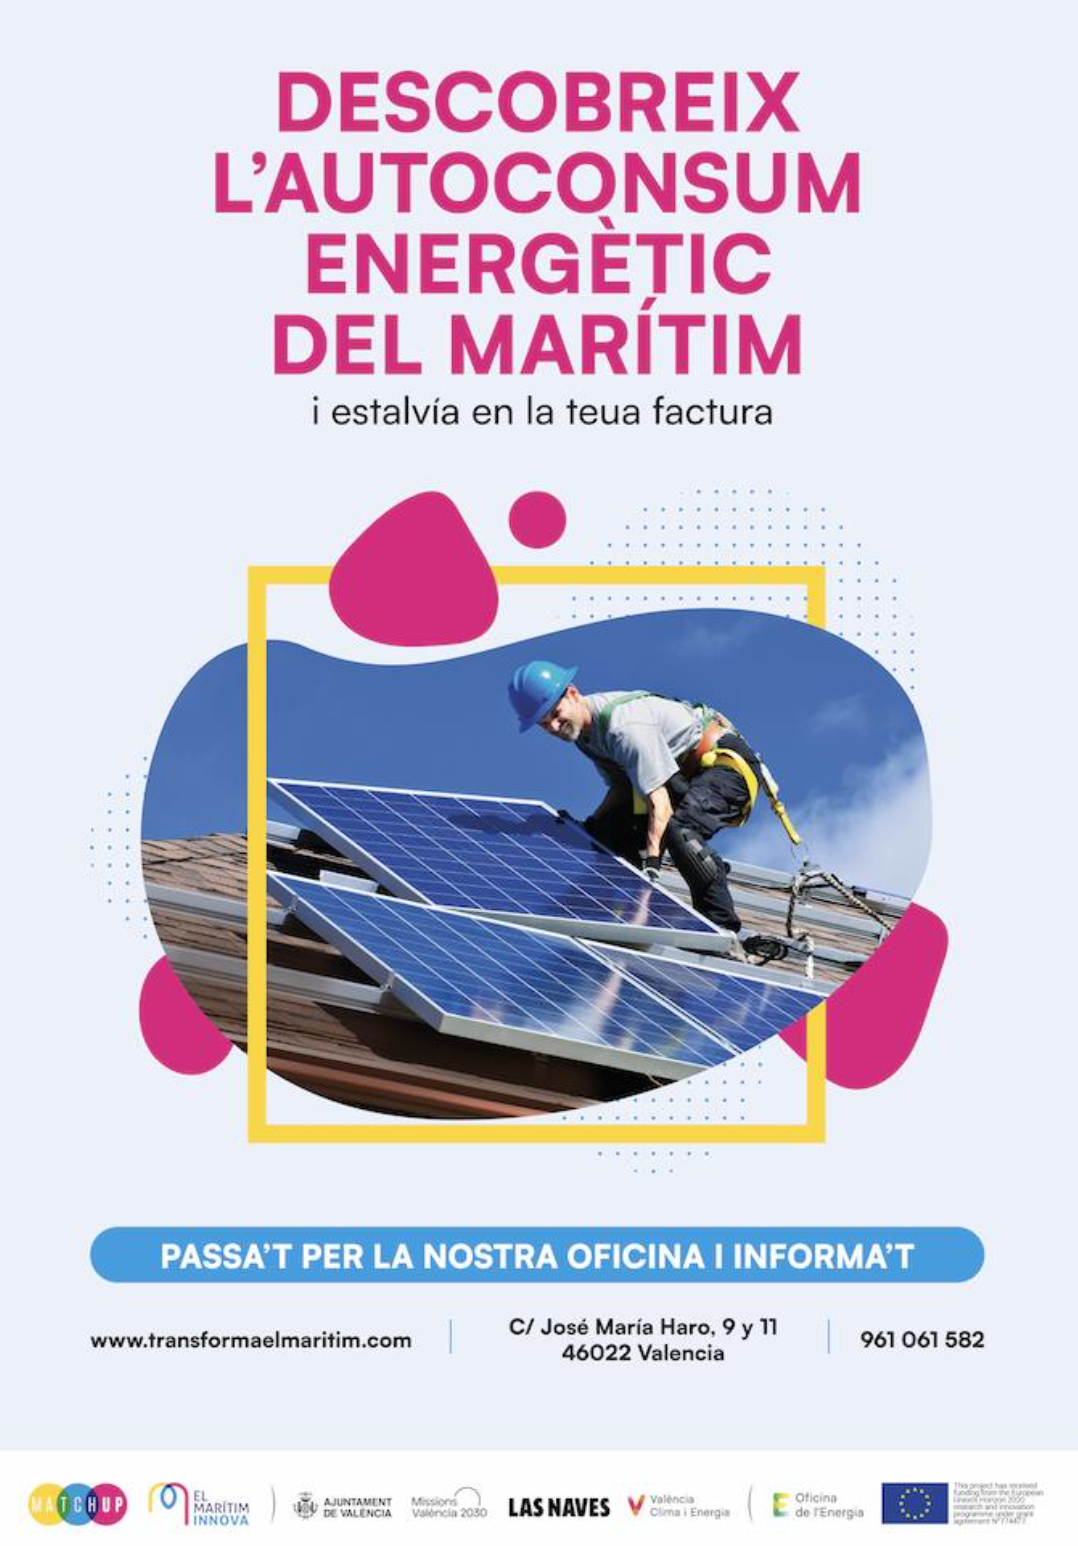 Cartel de la campaña de MAtchUP Descubre el autoconsumo energético del Marítimo